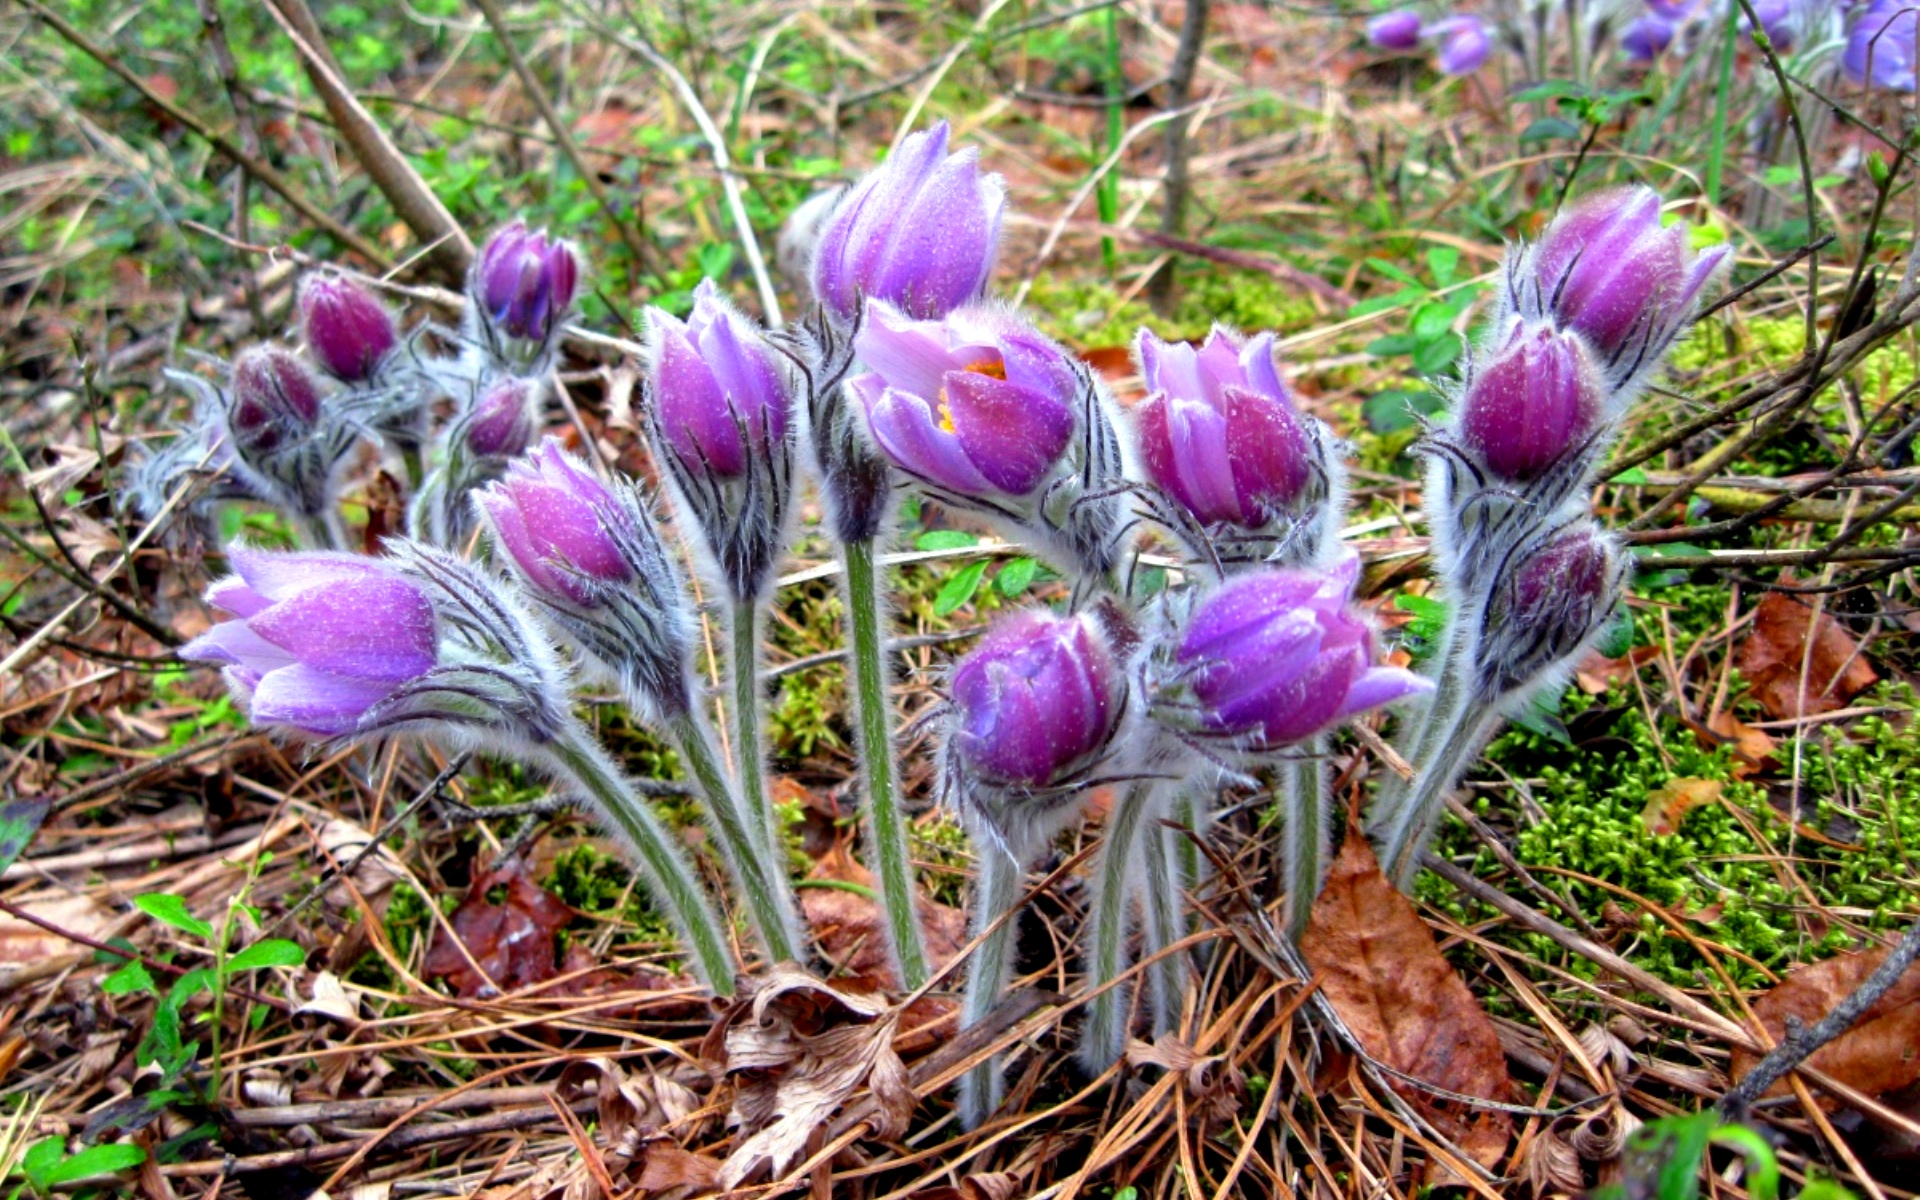 Pirmosios pavasario gėlės: raktažolių nuotraukos, pavadinimai ir aprašymai